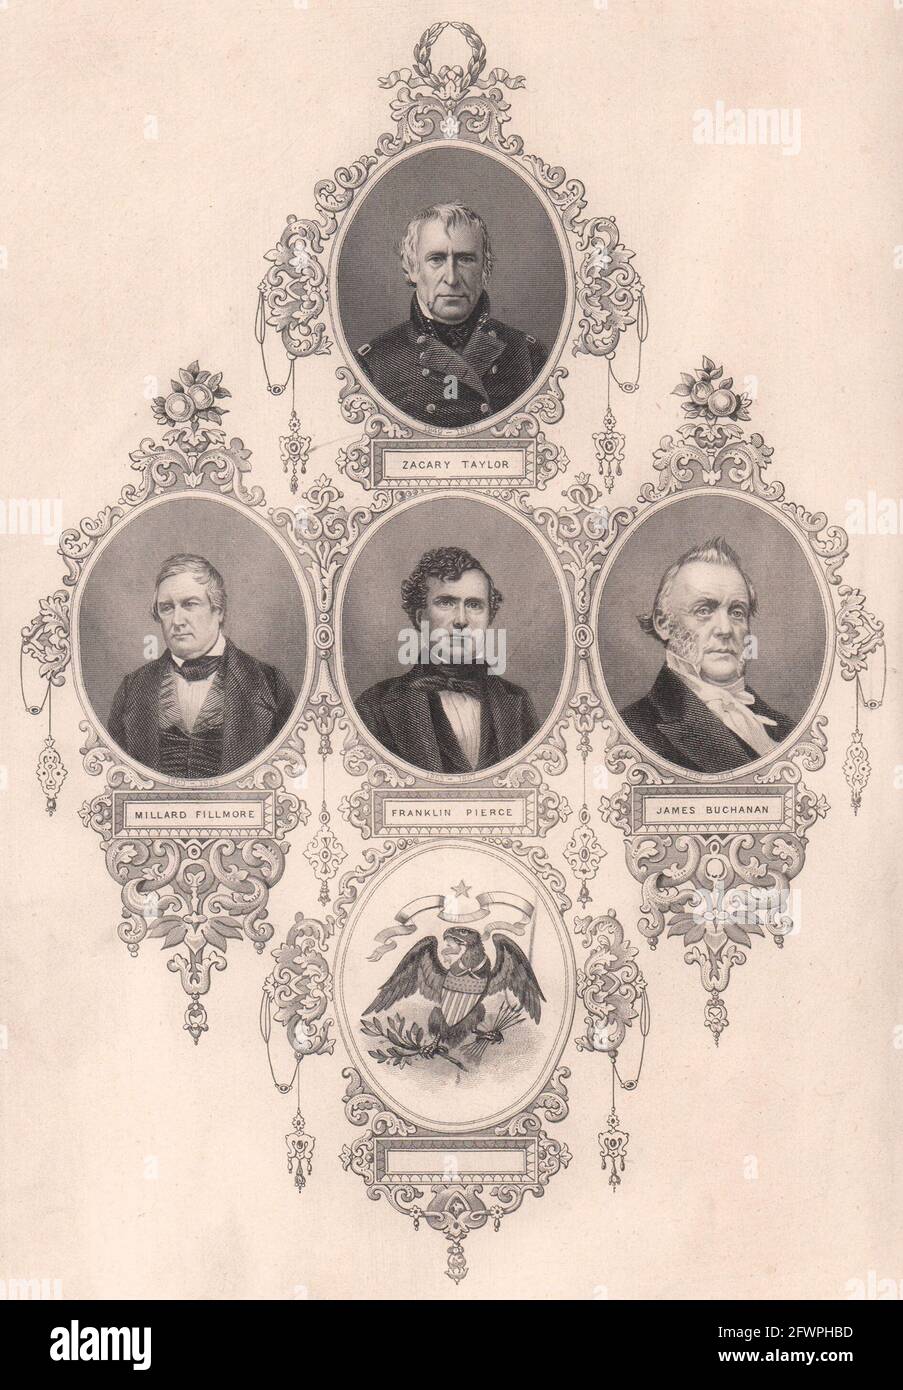 Zacary Taylor Millard Fillmore Franklin Pierce James Buchanan présidents des États-Unis 1863 Banque D'Images